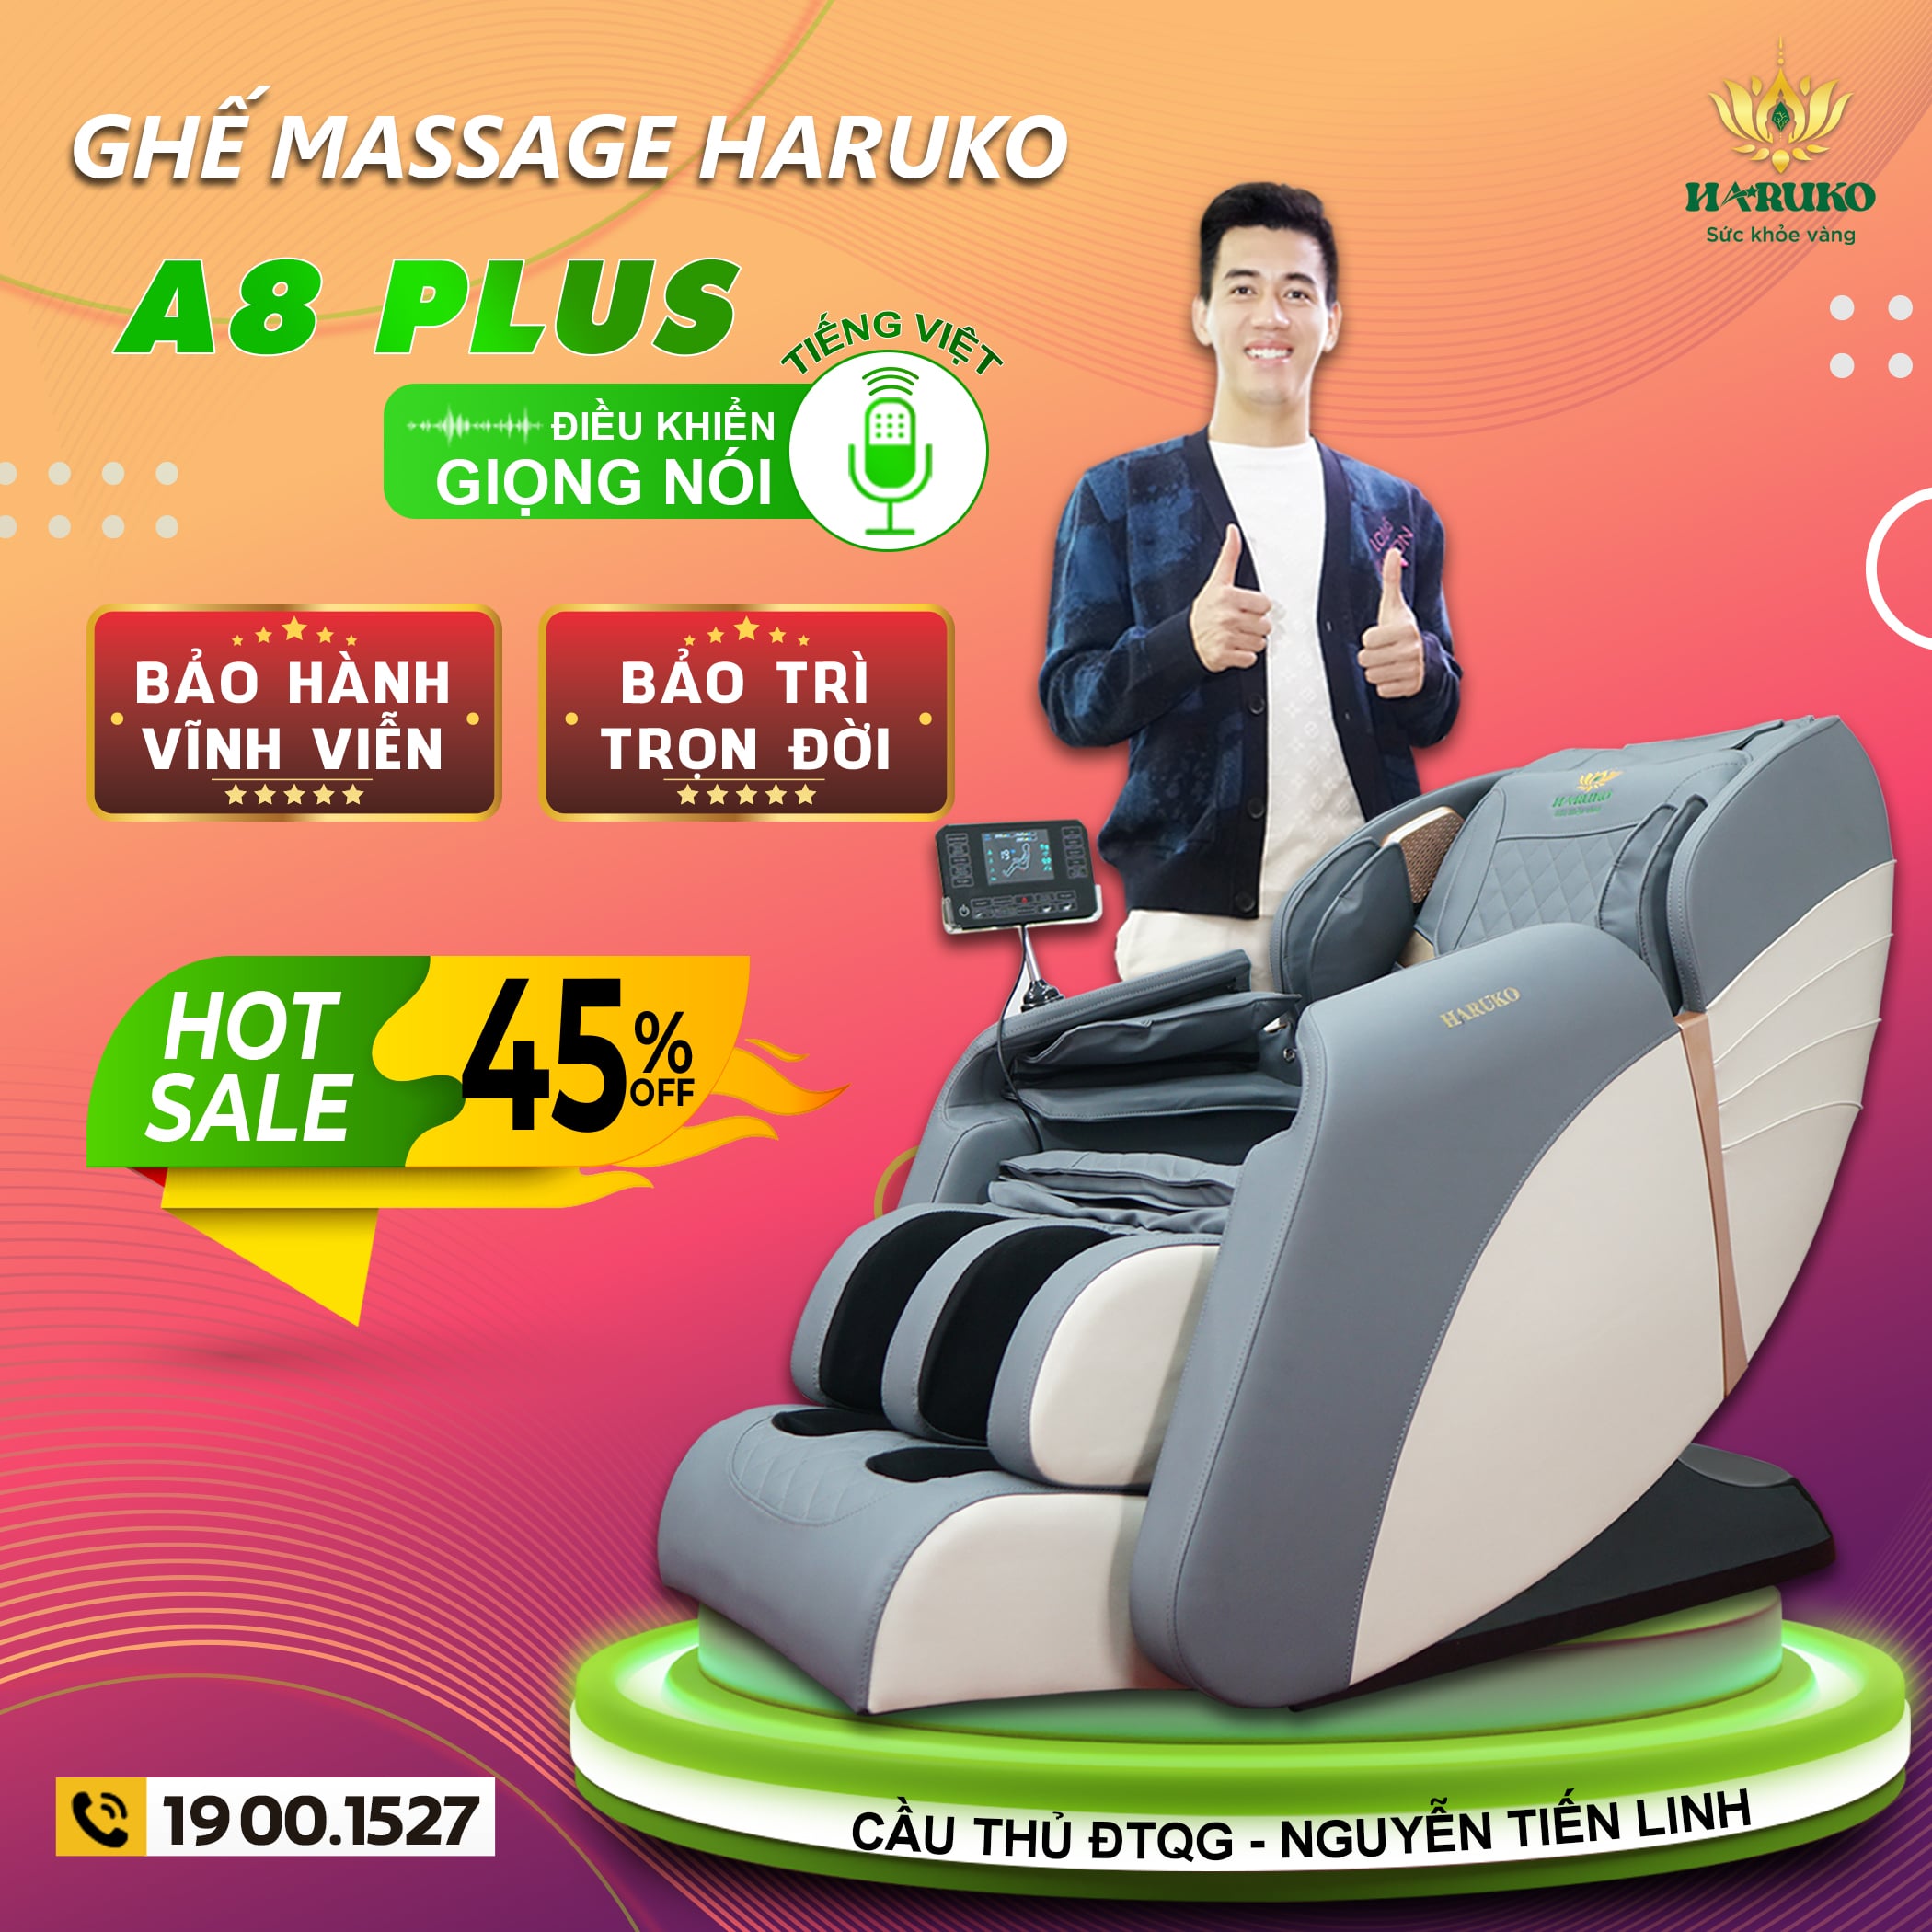 Ghế massage A8 Plus từ thương hiệu Akina sở hữu chính sách bảo hành cũng như bảo trì tốt nhất hiện nay